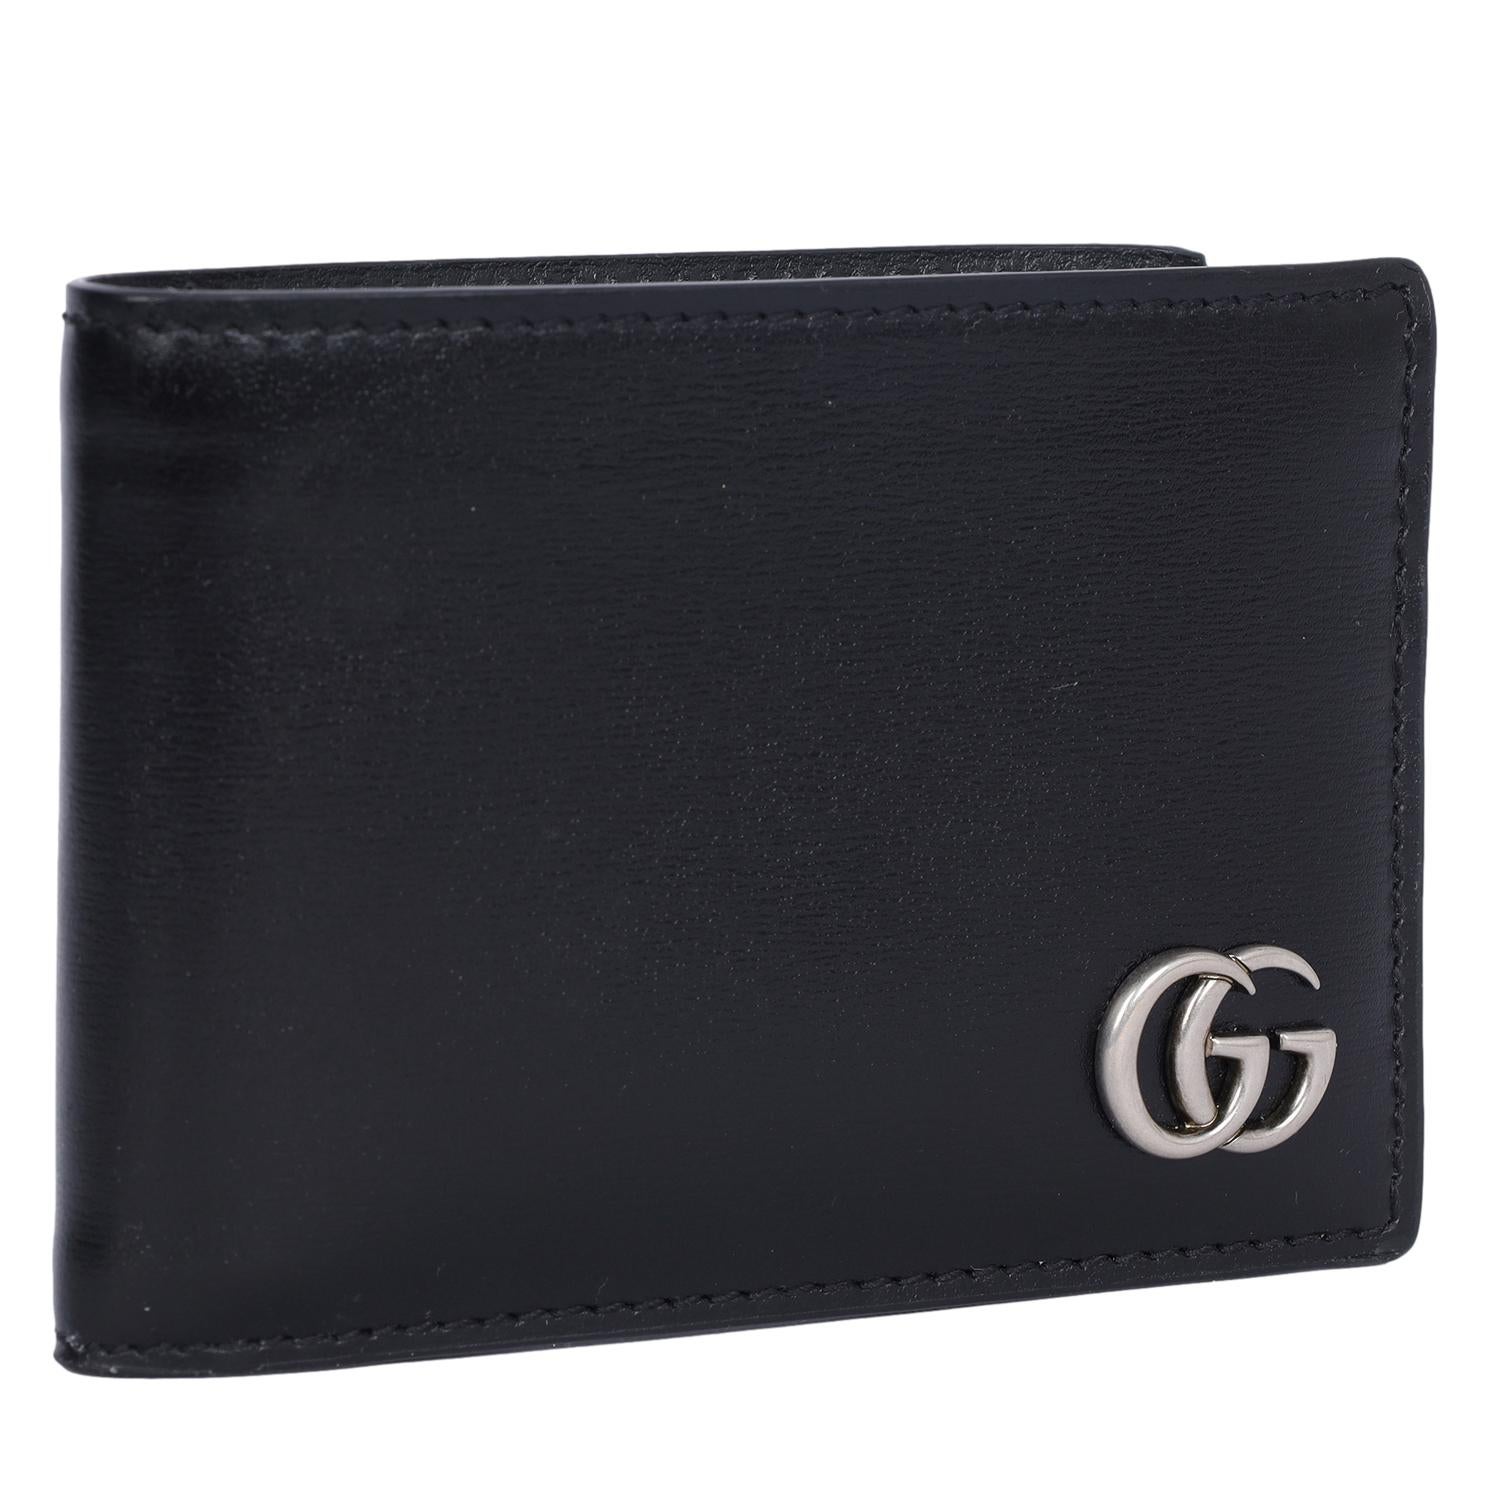 Authentique portefeuille bi-fold GG Marmont de Gucci en cuir noir. 

Un portefeuille fin en cuir noir lisse. Un double G en palladium qui ajoute une touche subtile de logo au portefeuille. Il y a 4 fentes pour cartes et un compartiment pour les